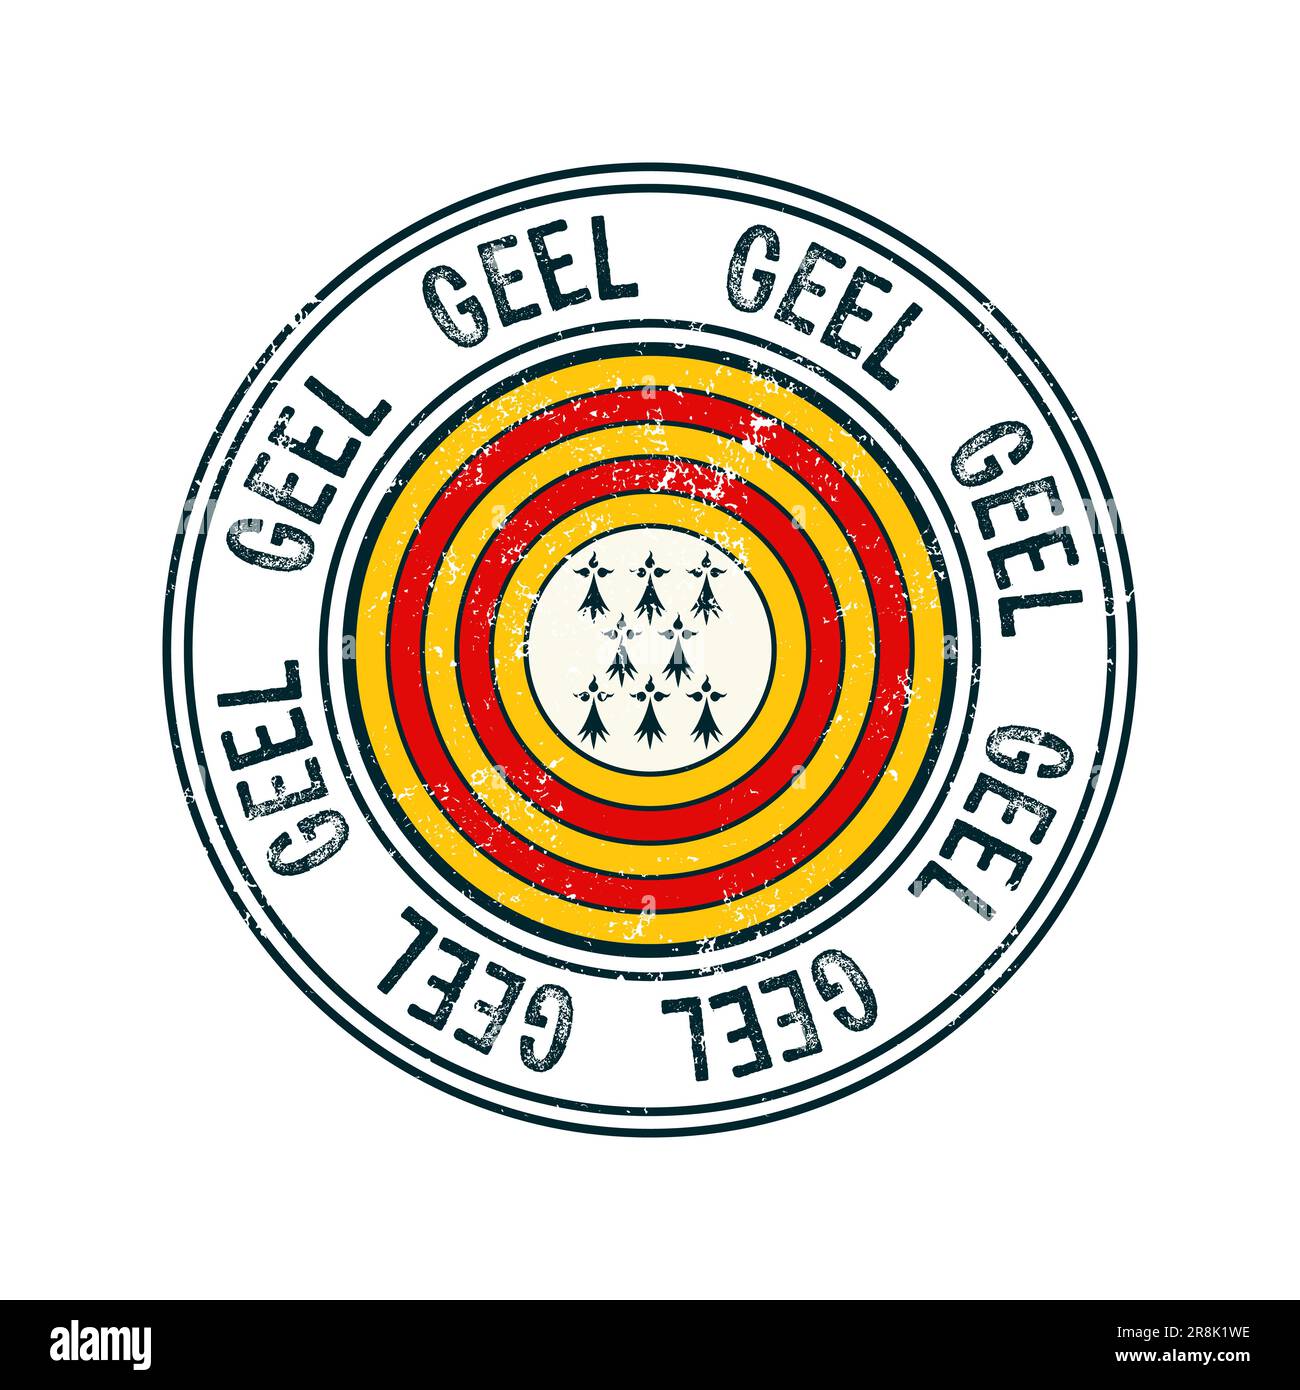 Geel, Belgio, francobollo di gomma vettoriale della città su sfondo bianco Illustrazione Vettoriale